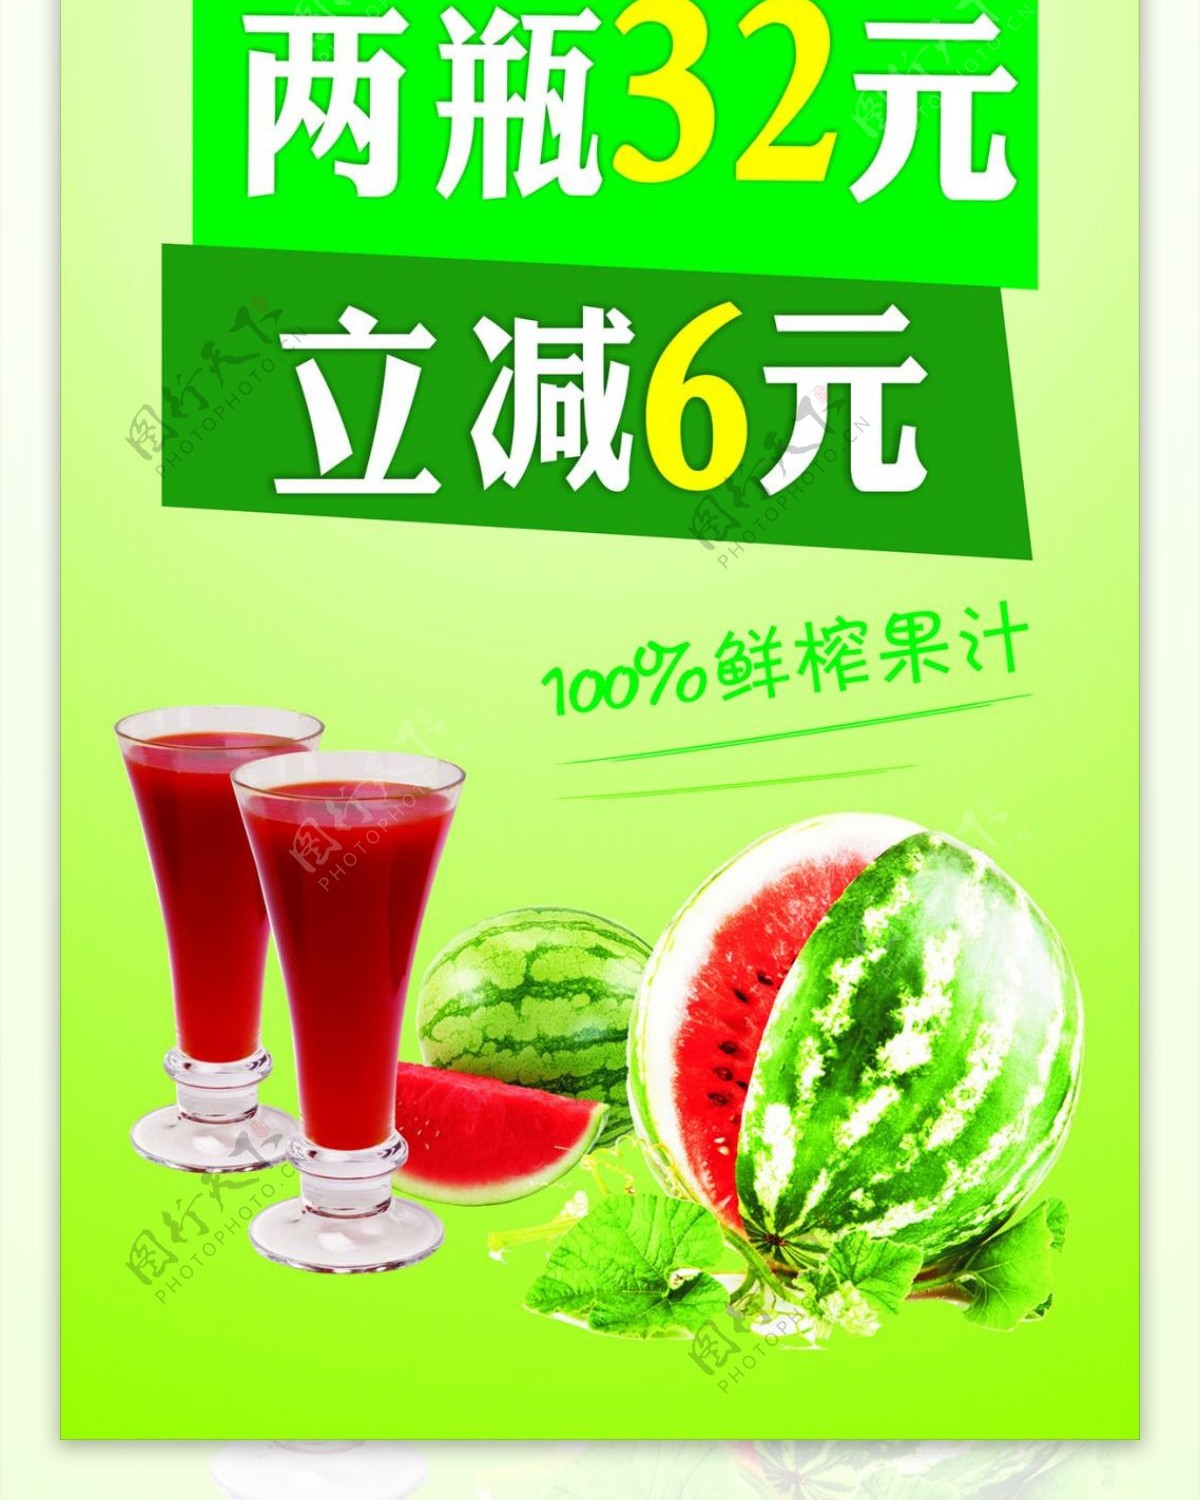 鲜榨西瓜汁优惠活动海报图片